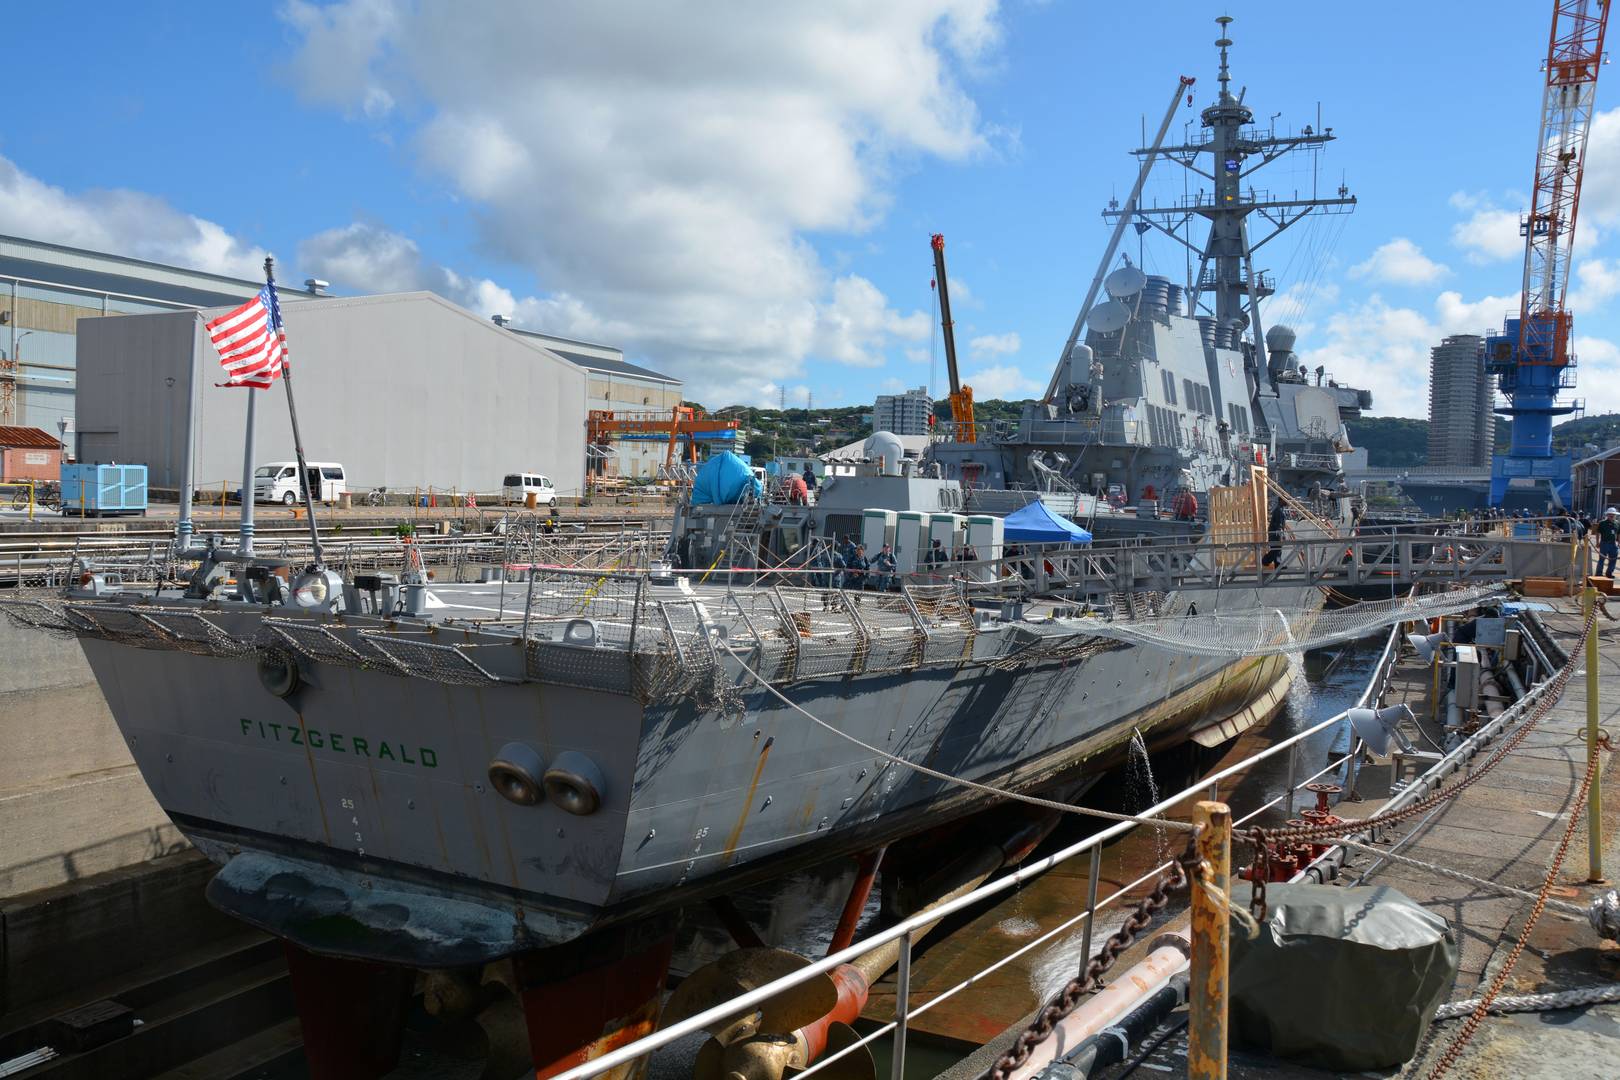 Эсминец УРО типа Fitzgerald ремонтируется в доках американской базы ВМС Йокосука после столкновения с контейнеровозом